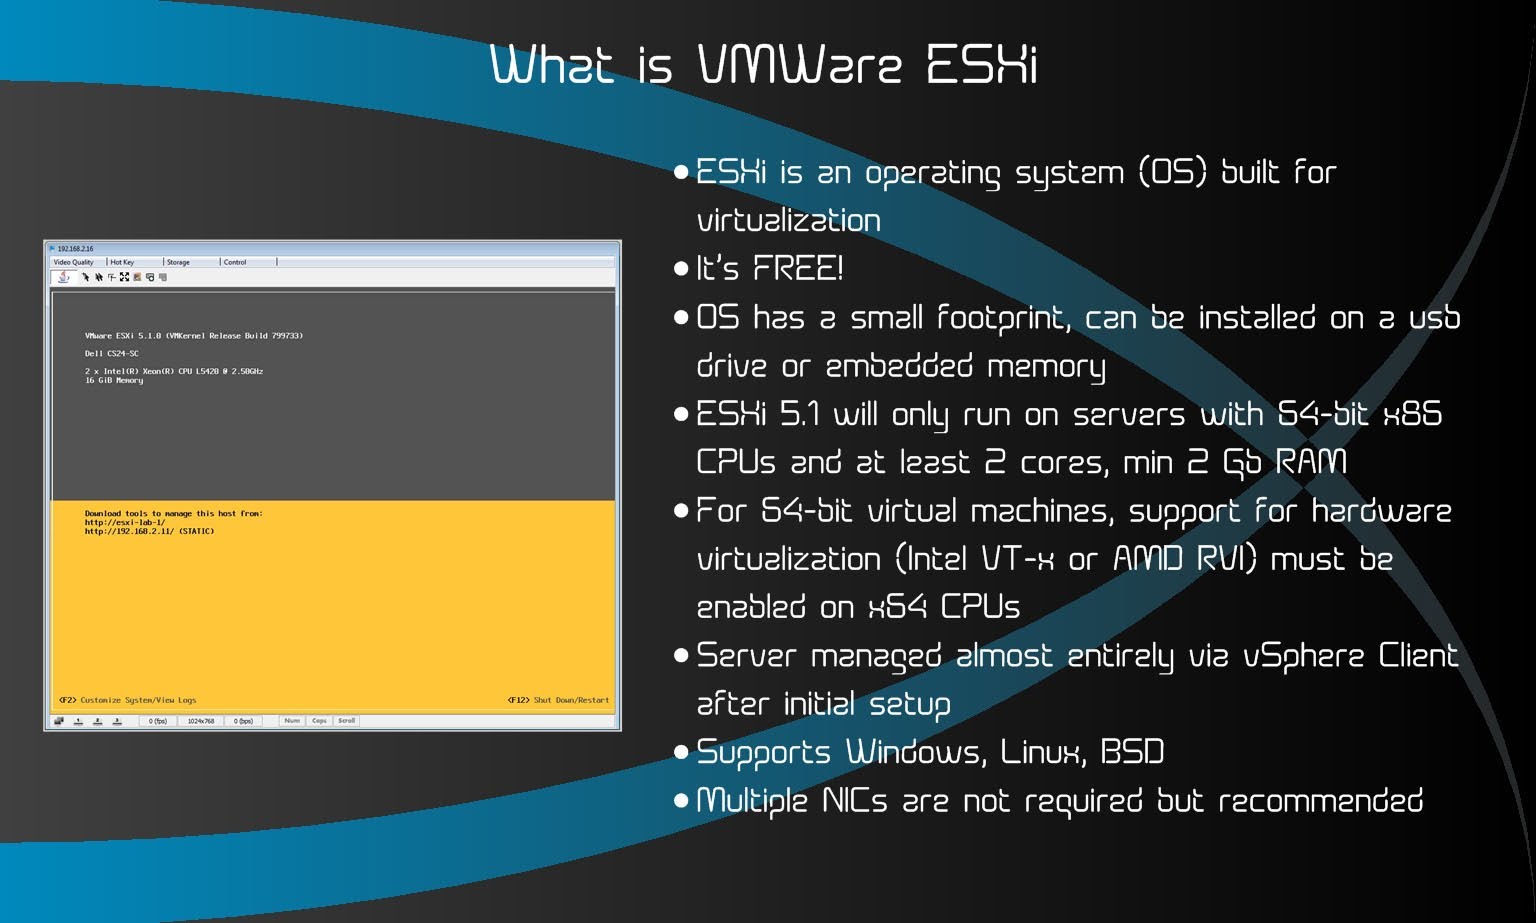 VMware ESXi Server คือ ซอฟต์แวร์ virtualization ของคอมพิวเตอร์ ที่พัฒนาขึ้นโดย VMware Inc. ESXi Server เป็น VMware ESX Server ที่ทันสมัย และมีขนาดเล็กลง ซึ่งเป็นผลิตภัณฑ์ซอฟต์แวร์การจำลองคอมพิวเตอร์เสมือน ระดับ enterprise ของ VMware ใช้งานได้ภายในโครงสร้างพื้นฐาน VMware ESXi สามารถใช้เพื่ออำนวยความสะดวกในการจัดการแบบรวมศูนย์สำหรับเดสก์ท็อปและแอพพลิเคชันศูนย์ข้อมูลขององค์กร